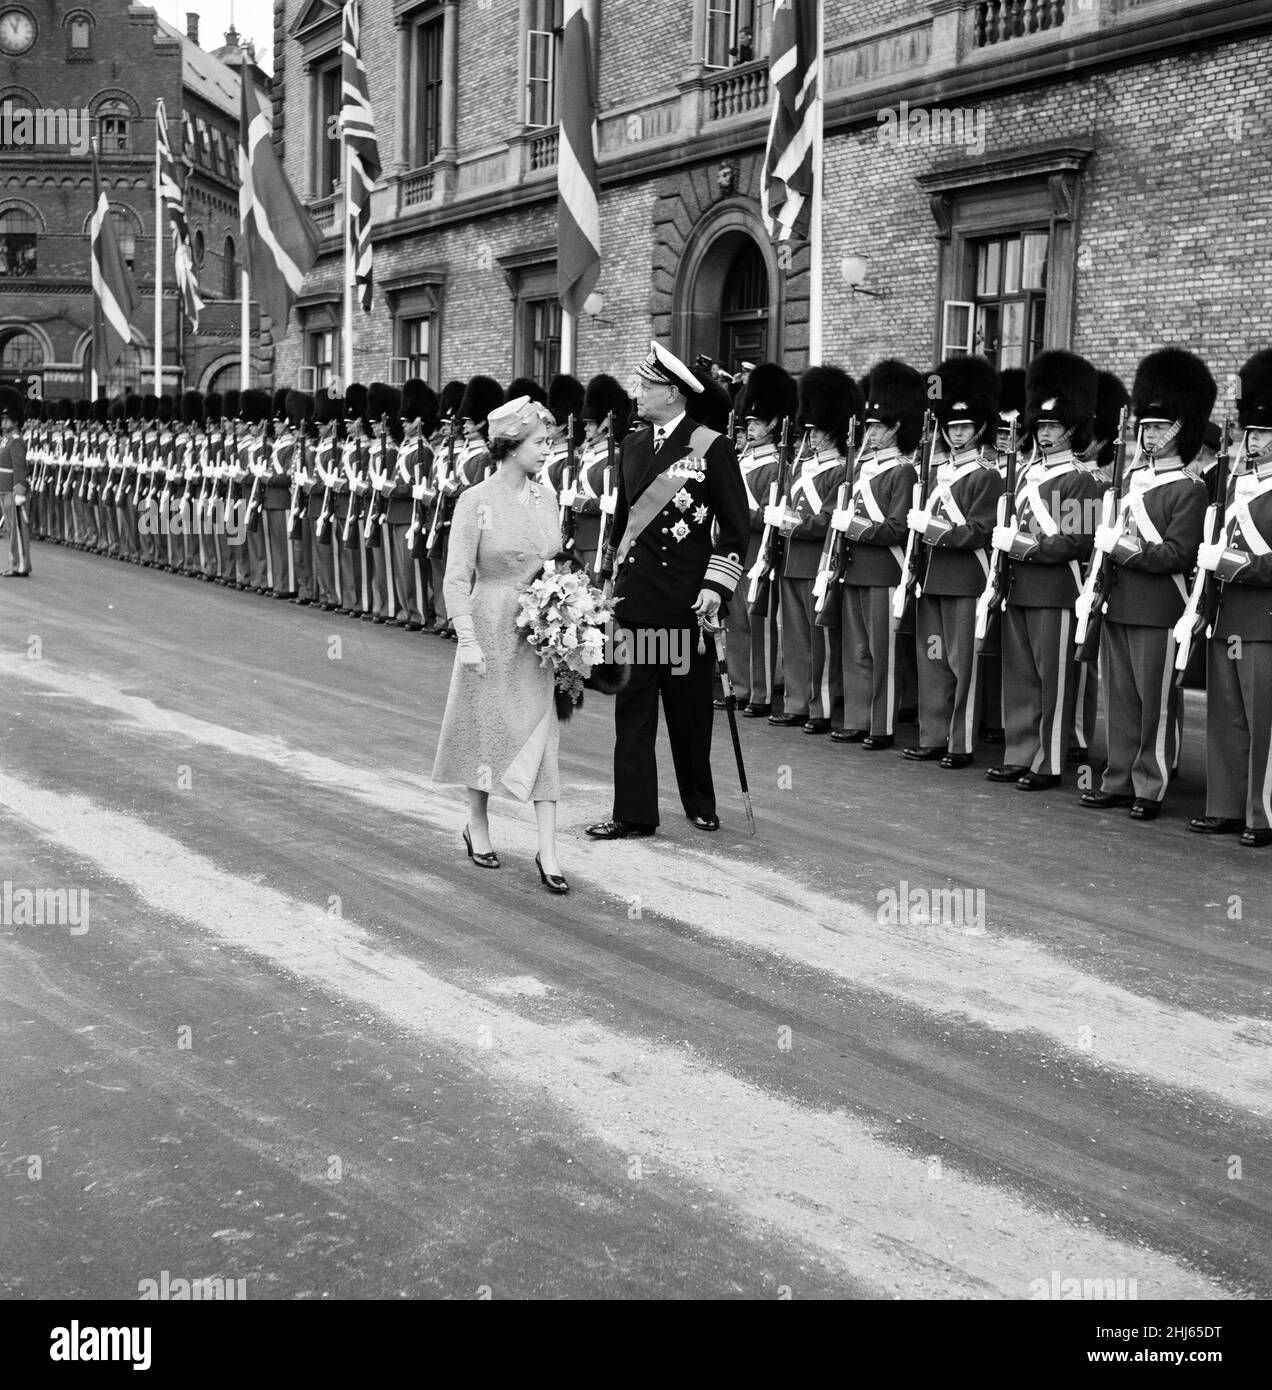 Besuch von Königin Elizabeth II. In Dänemark. Königin Elisabeth II. Und König Frederik IX. Von Dänemark inspizieren am ersten Tag eines Staatsbesuches in Dänemark eine Ehrengarde in Kopenhagen. 21st Mai 1957. Stockfoto